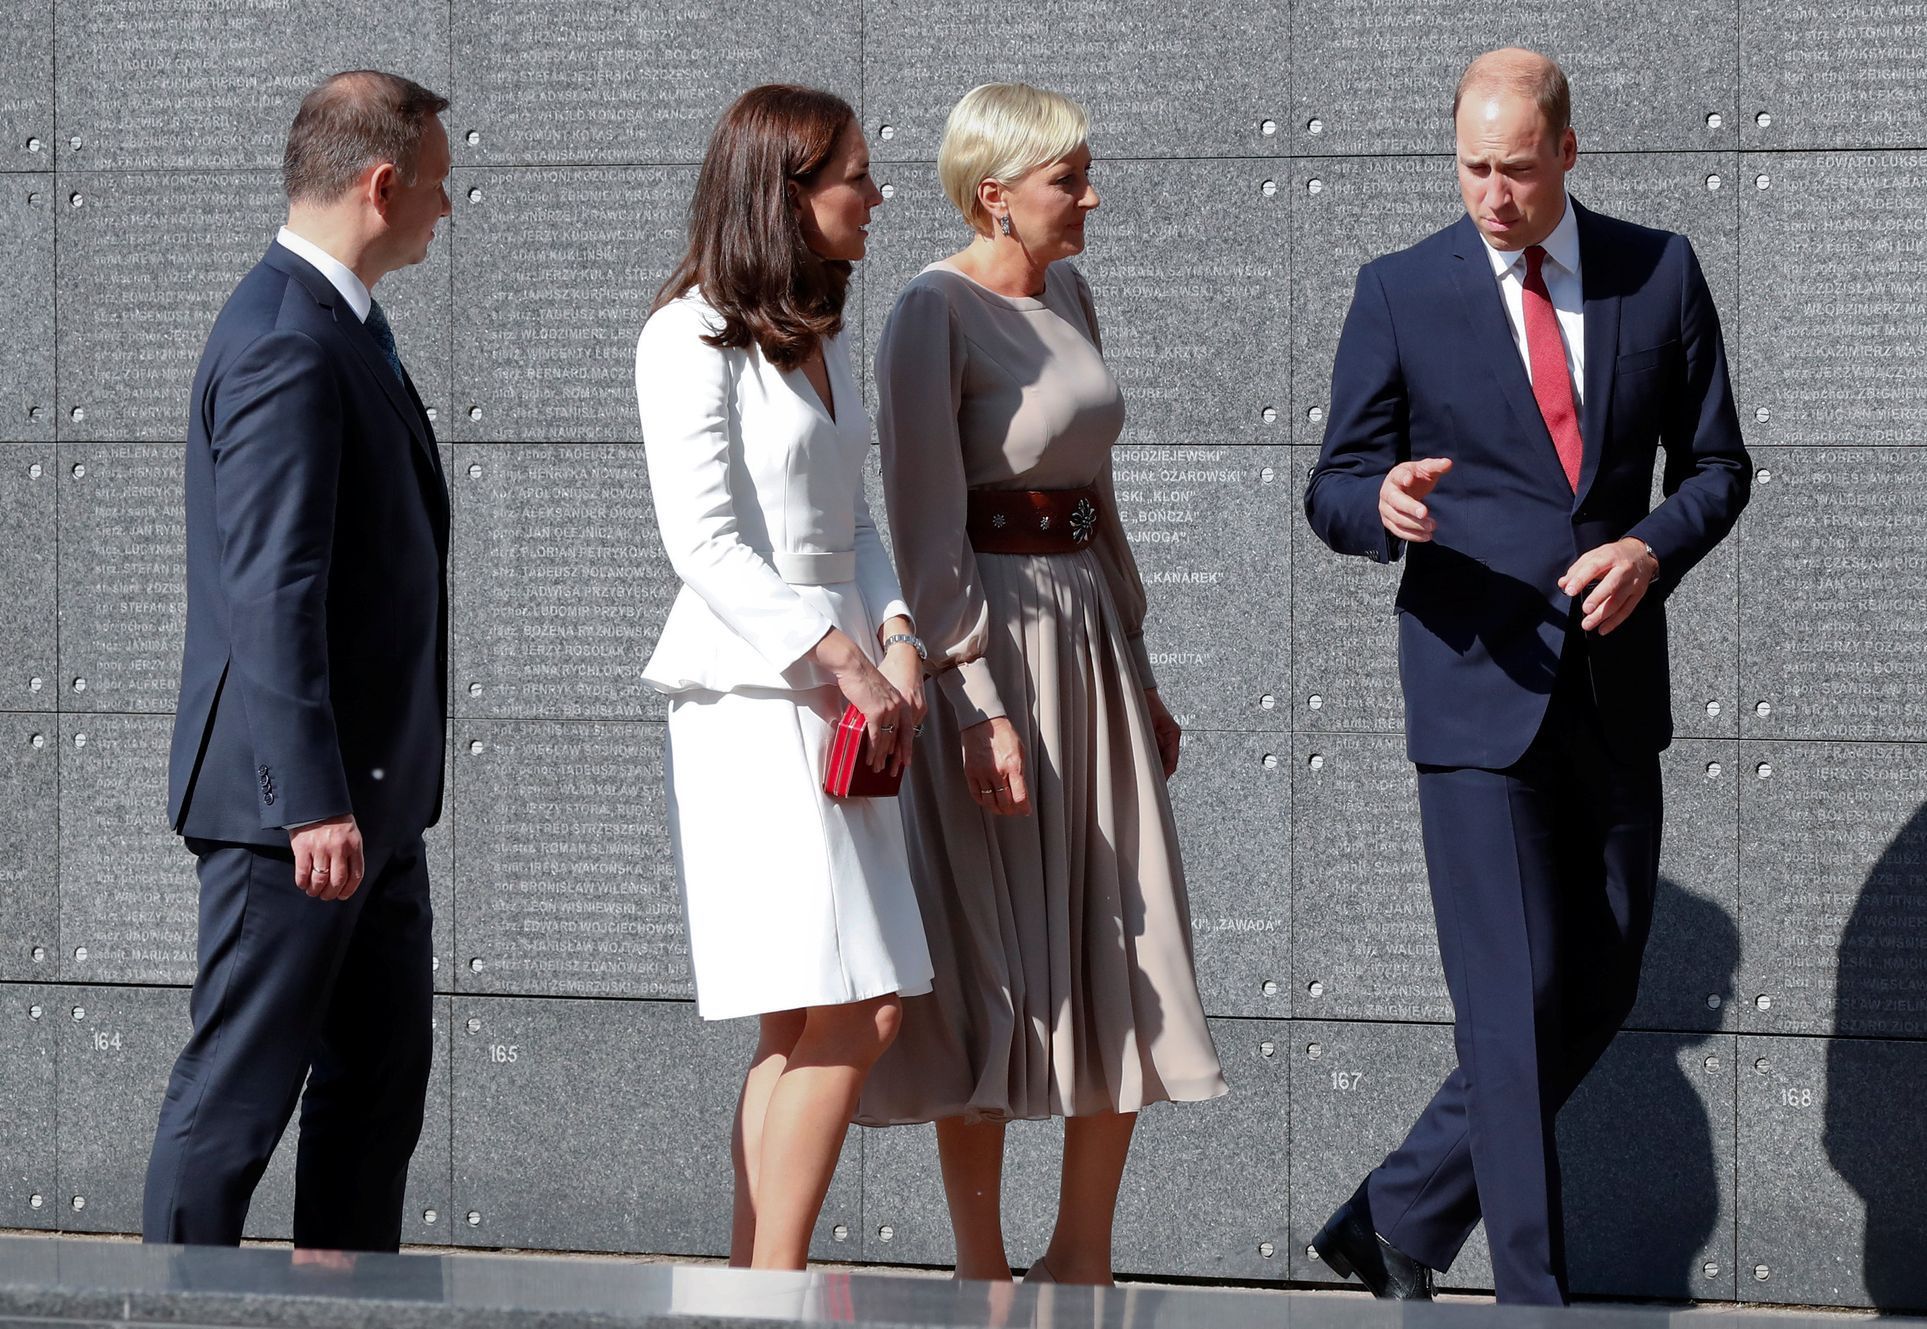 Princ William a jeho vévodkyně Kate